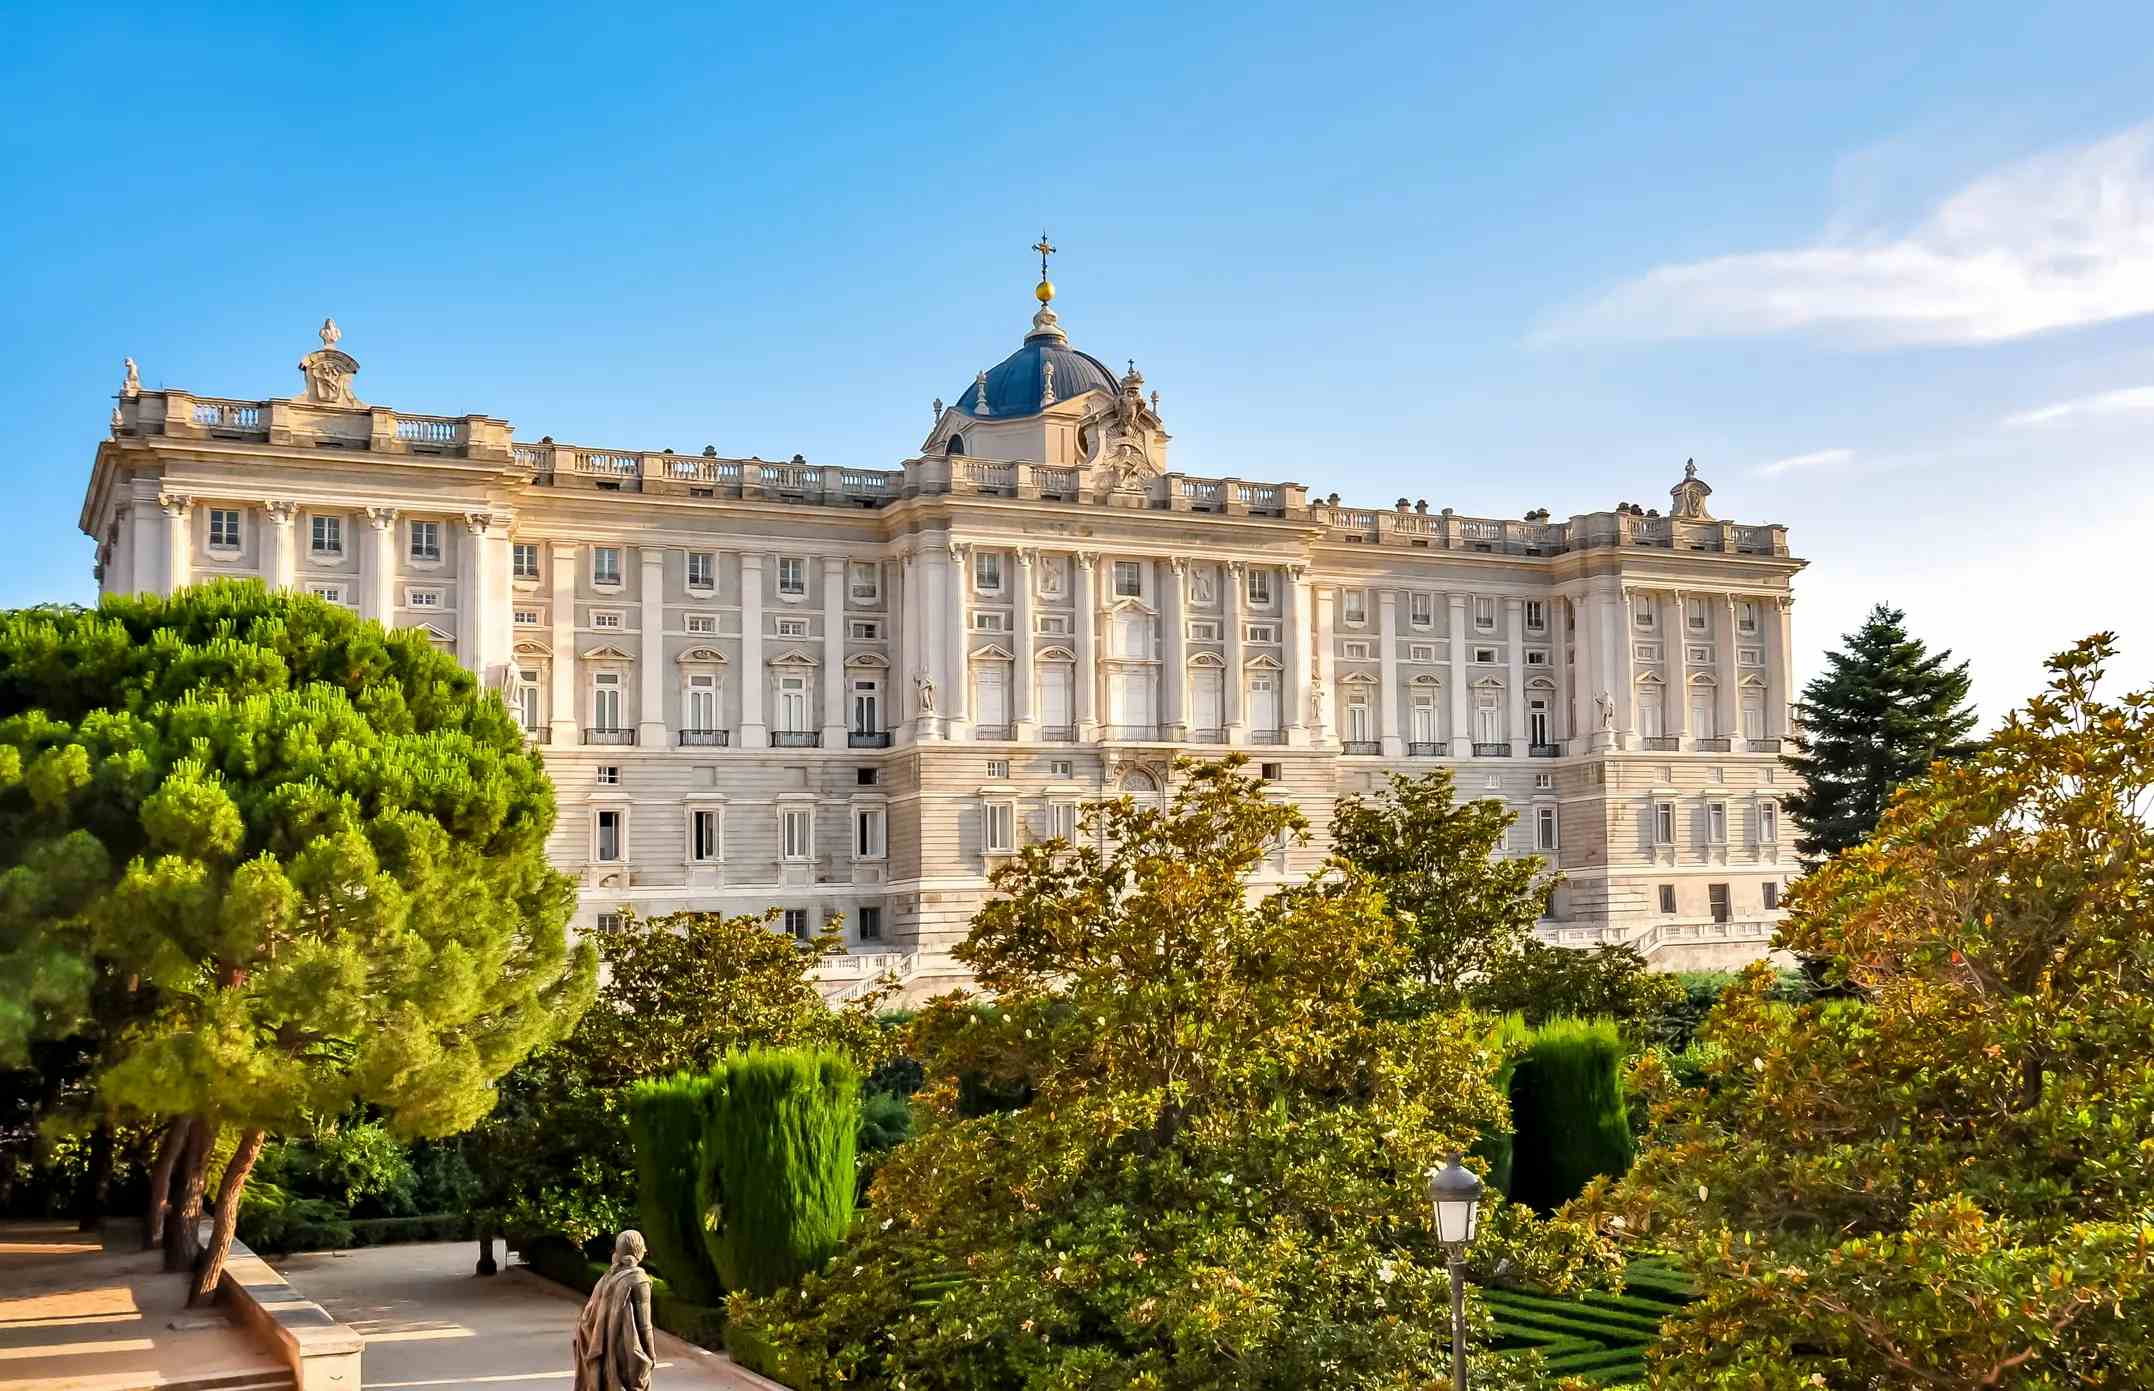 Royal Palace of Madrid image